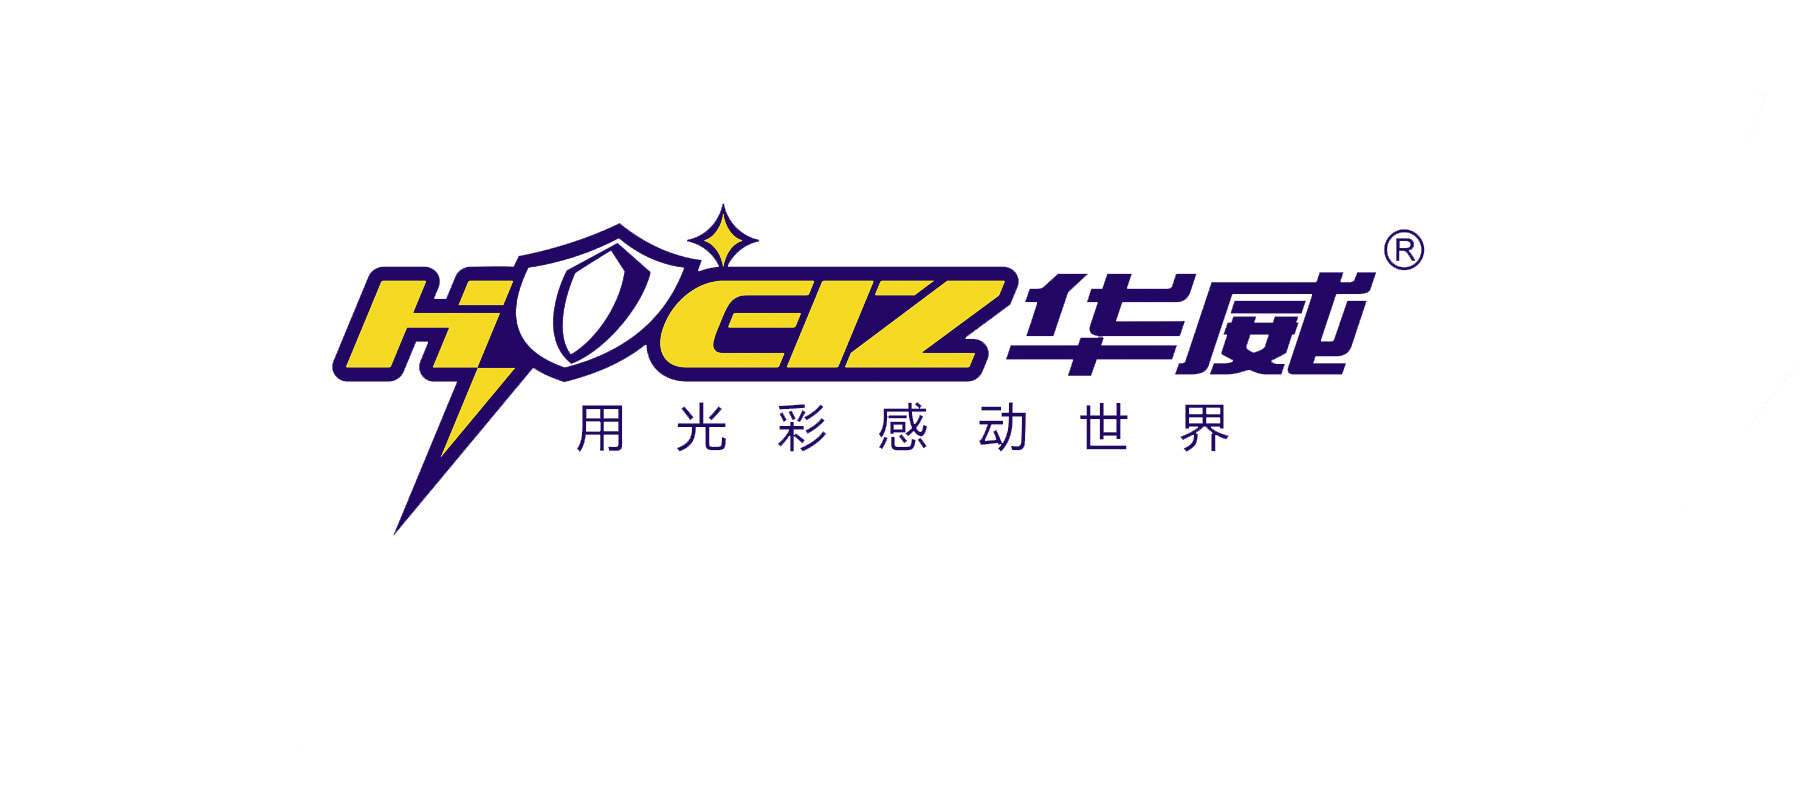 Zhongshan Hongfan Lighting Co., Ltd.